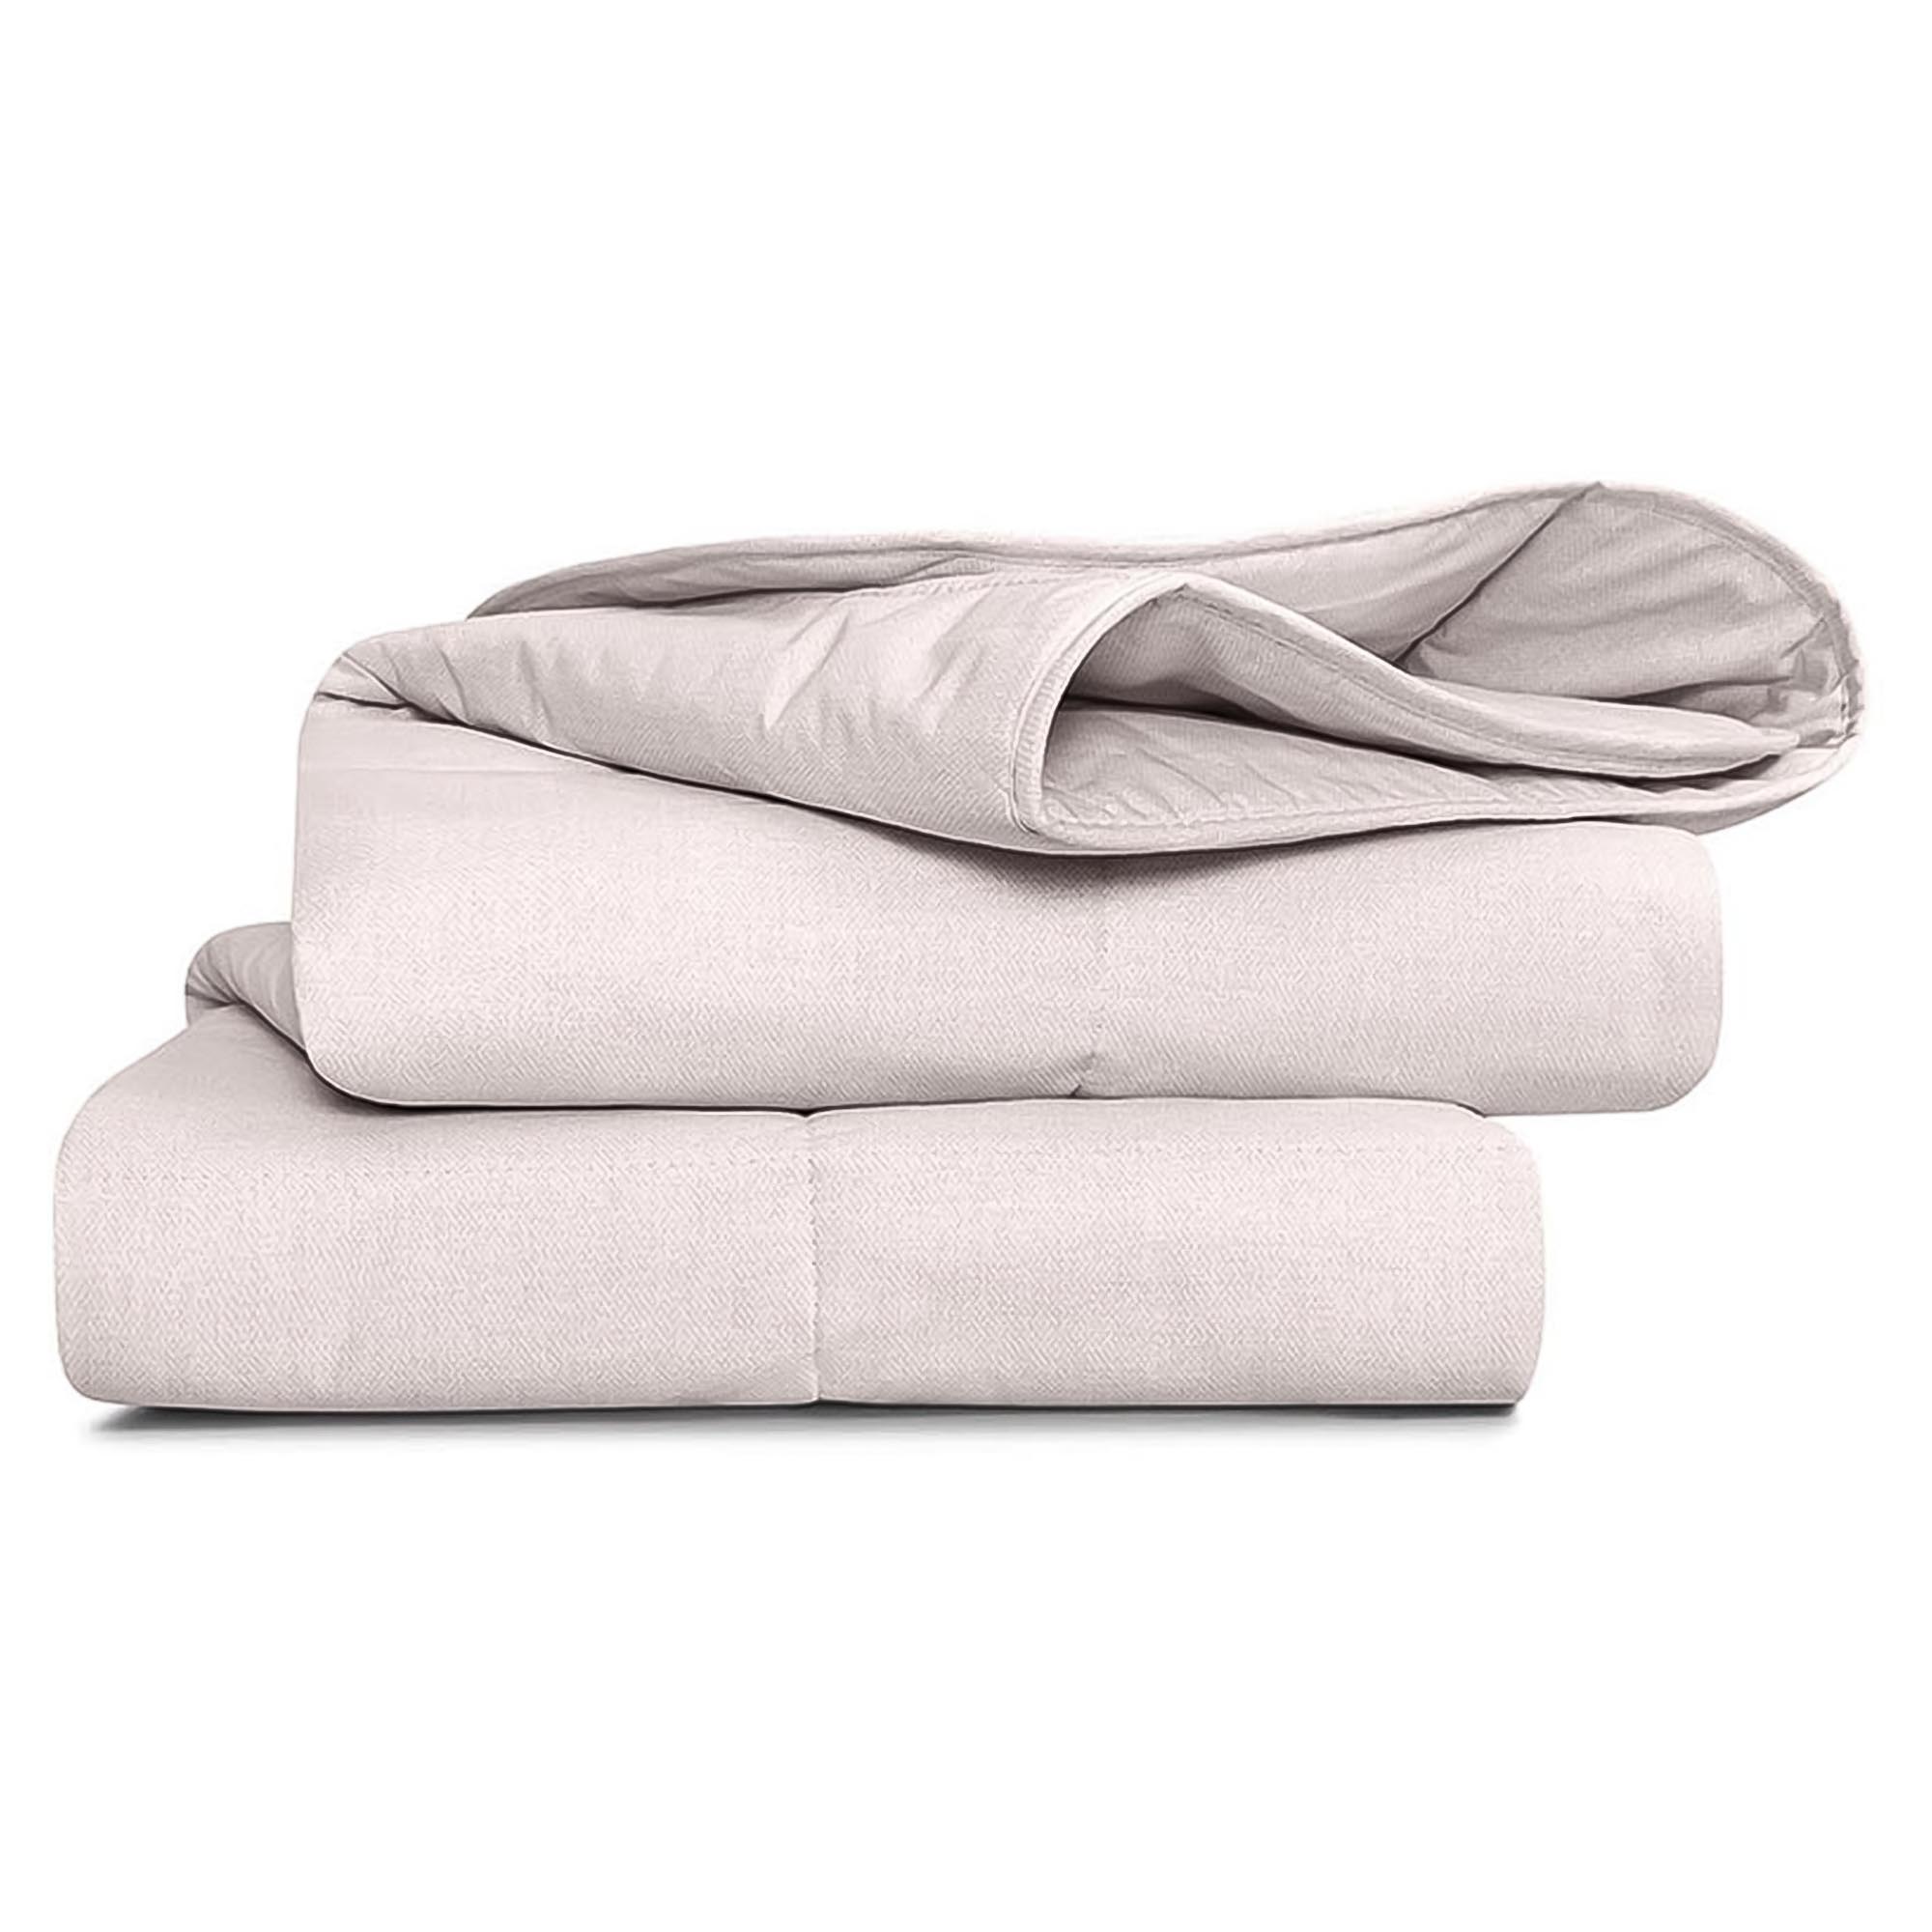 Одеяло Medsleep Sonora белое 140х200 см одеяло зимнее medsleep sonora экрю 175х200 см